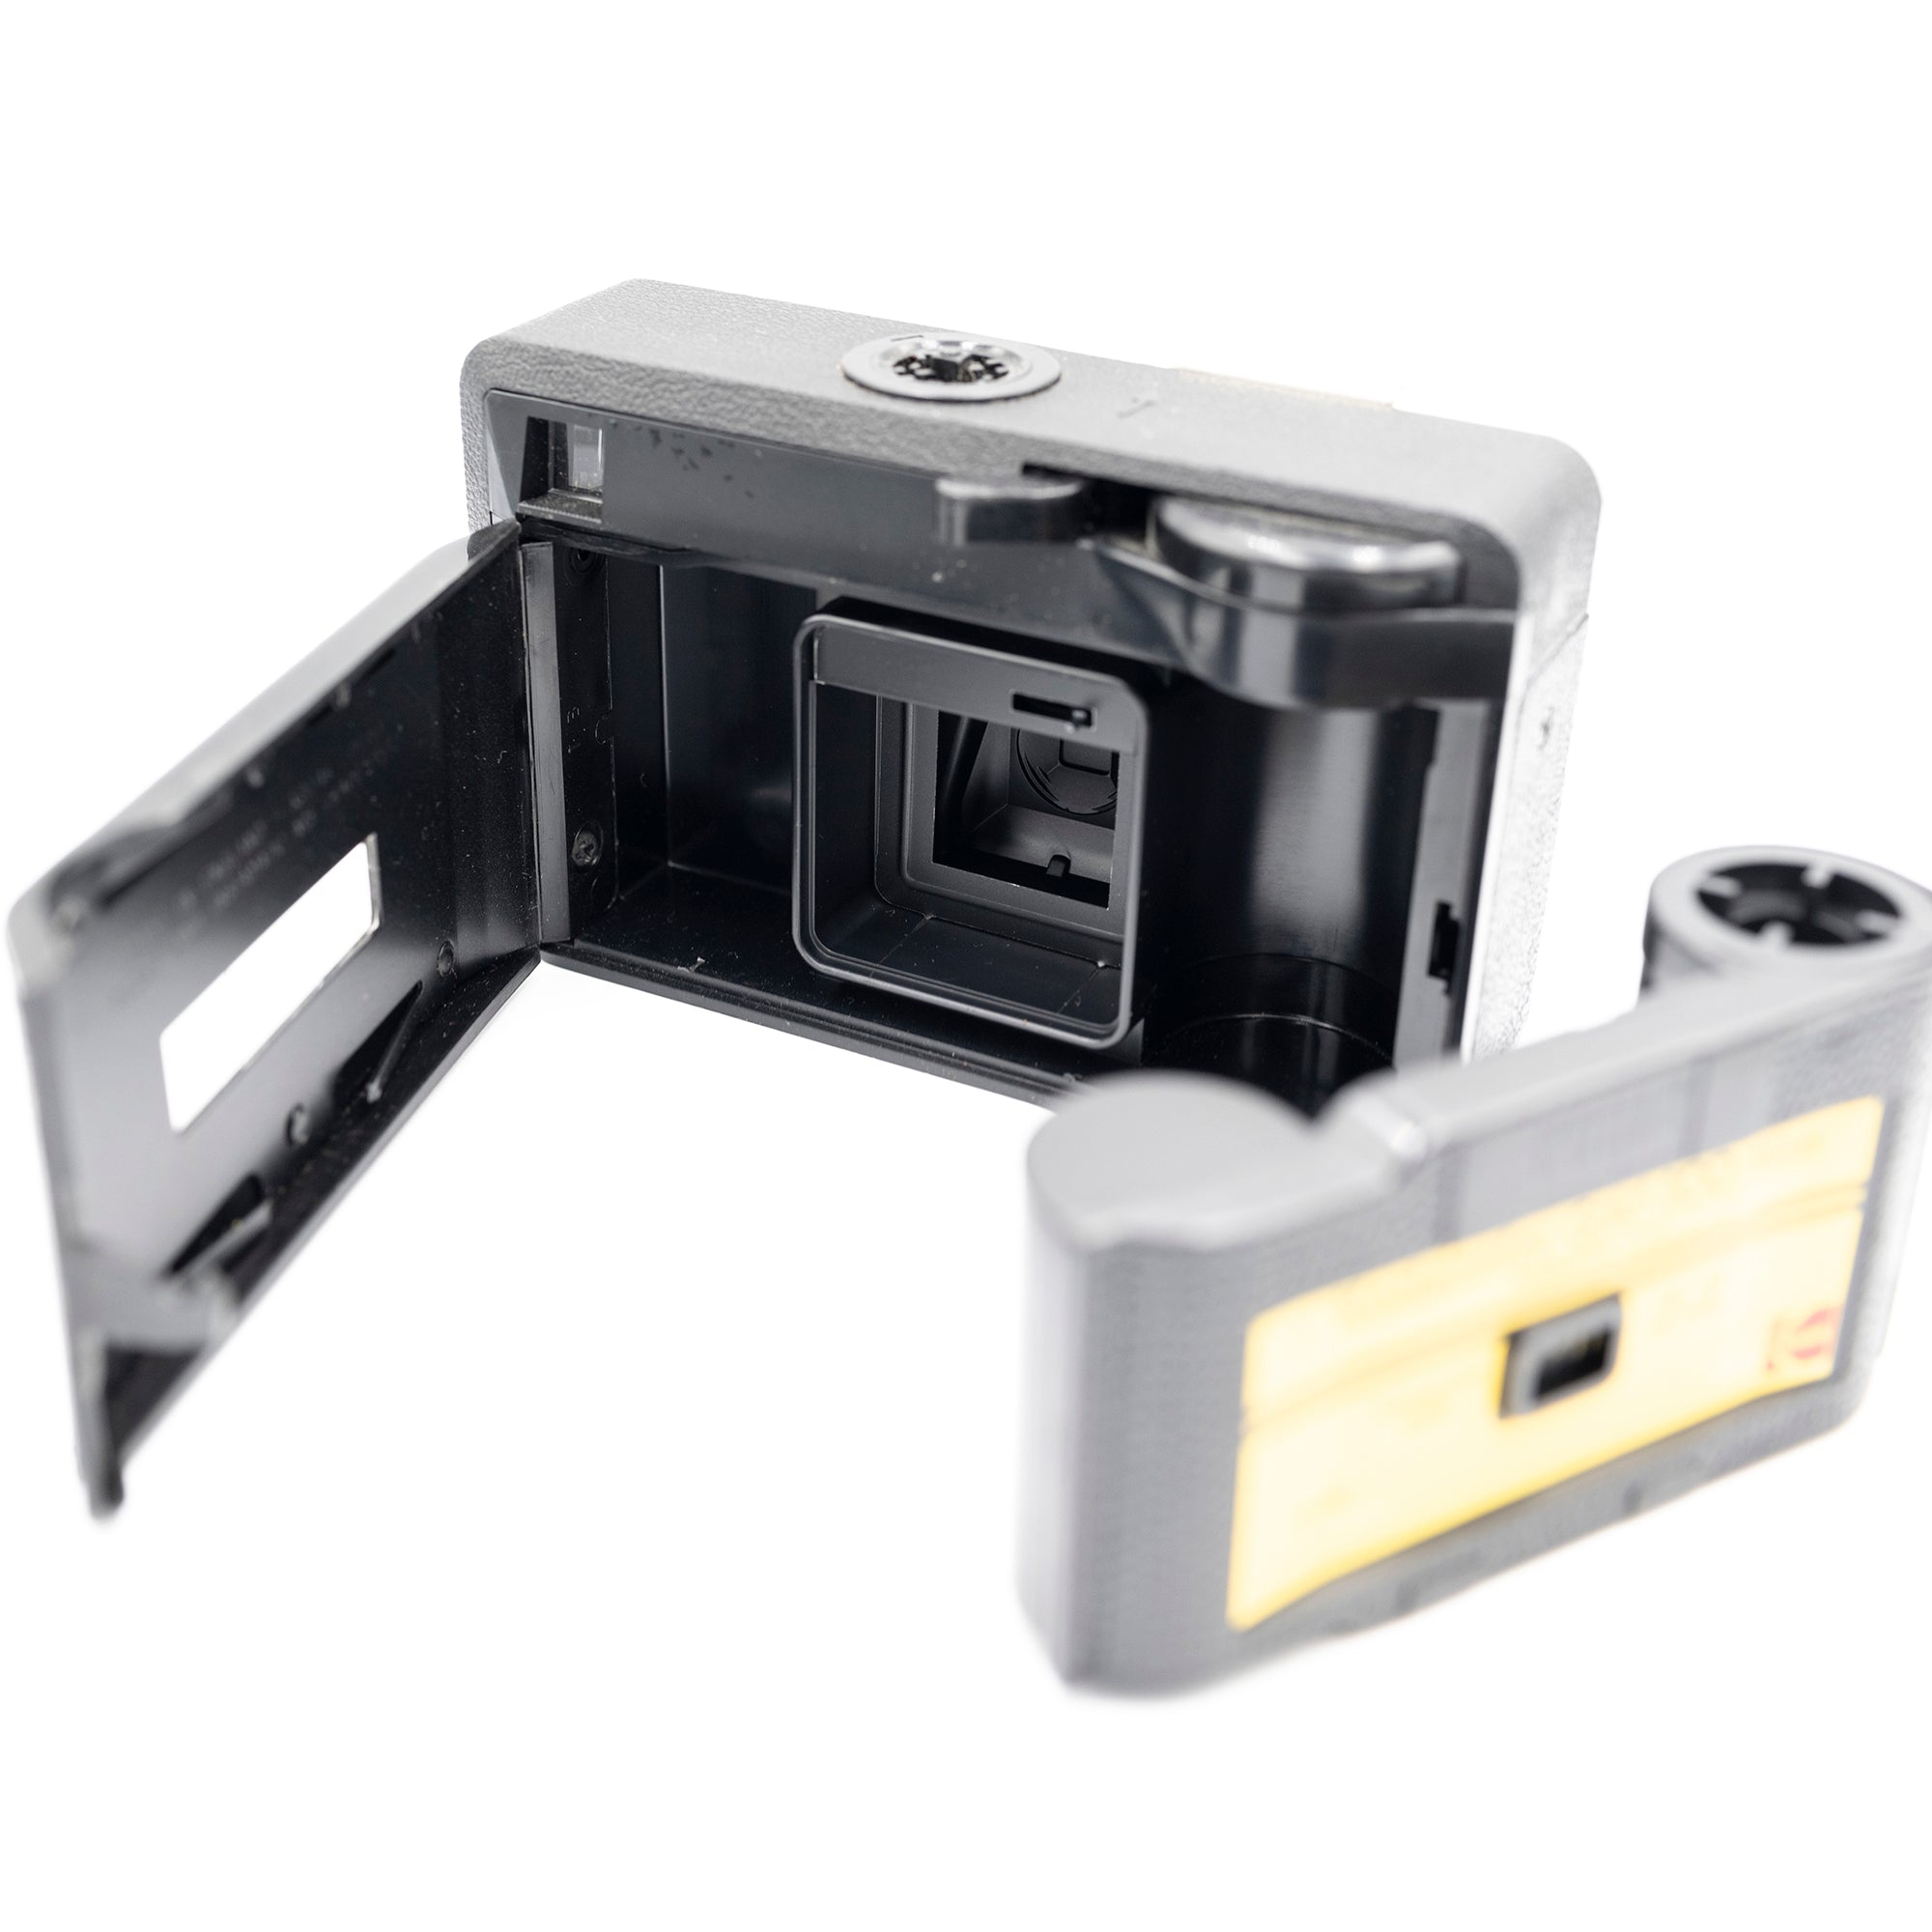 Kodak 77x 'Instamatic Camera'